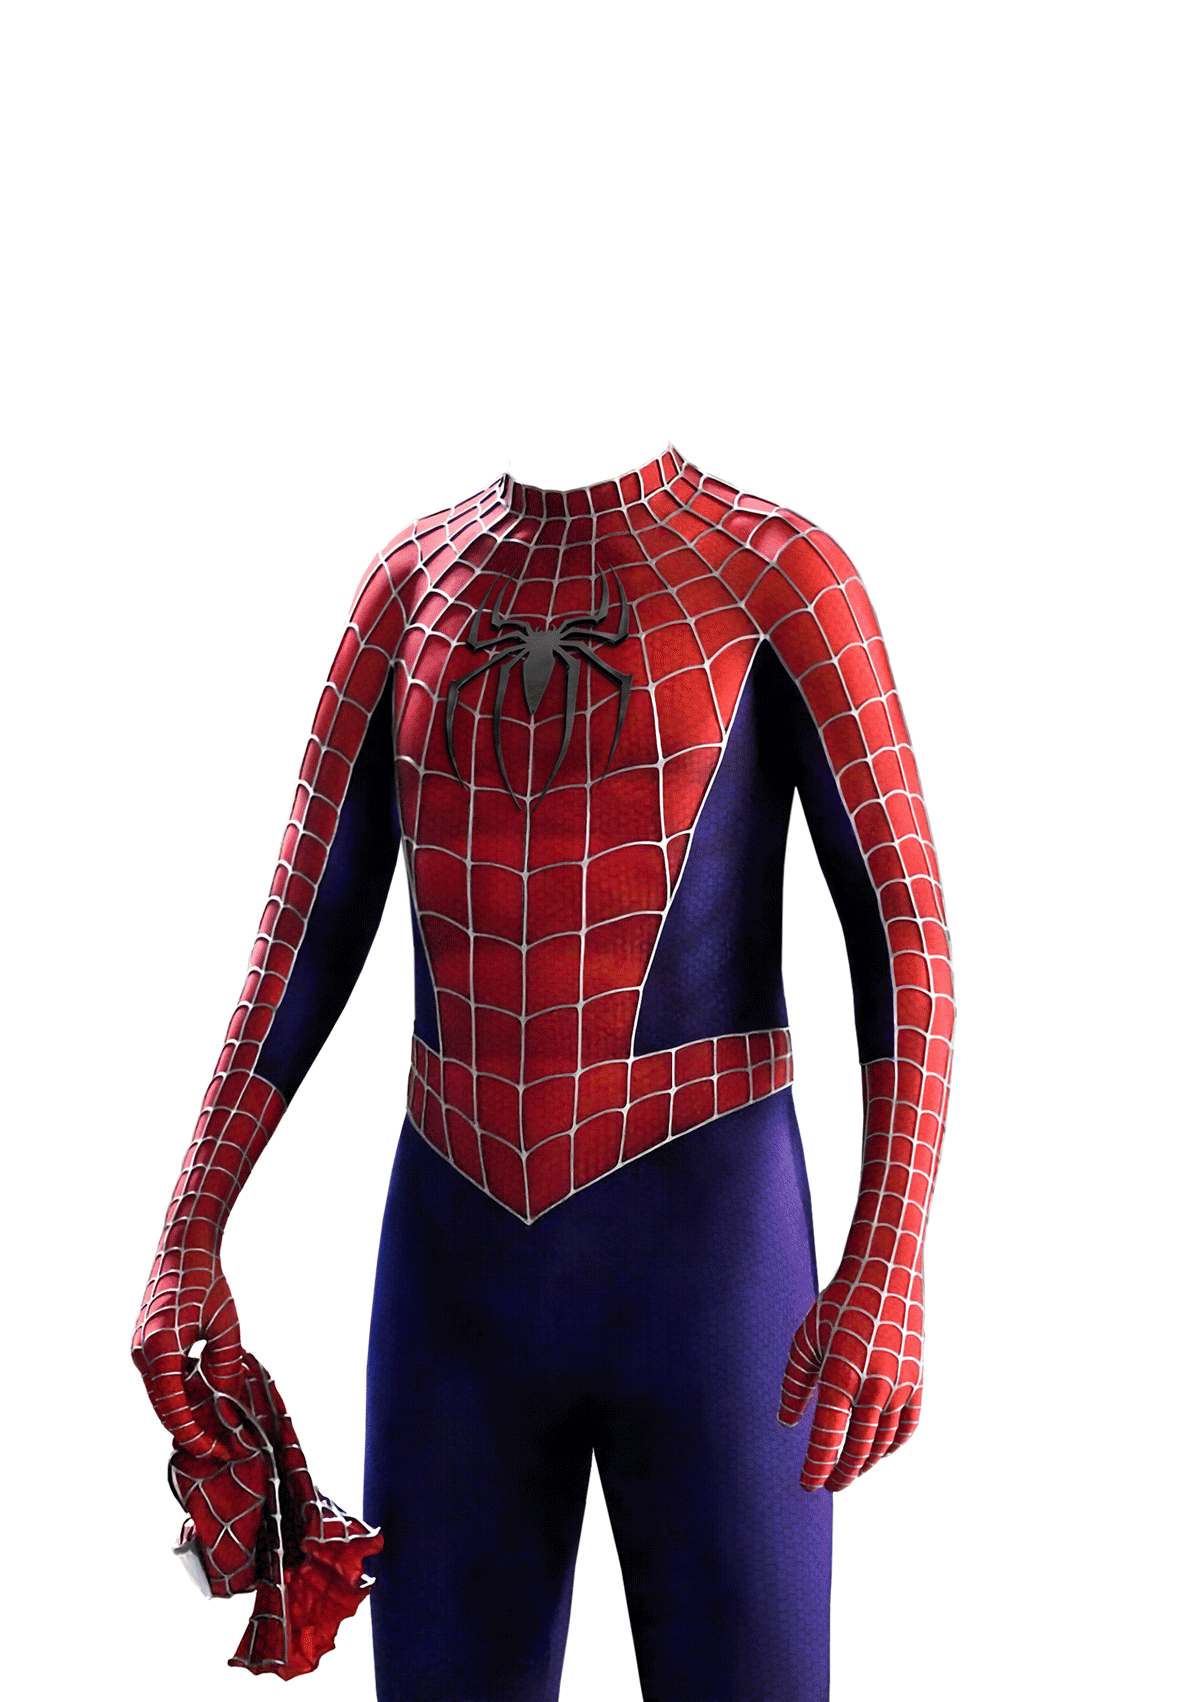 Spider Man No Way Home Logo Png Spider Man Suit Png Backinblack ...